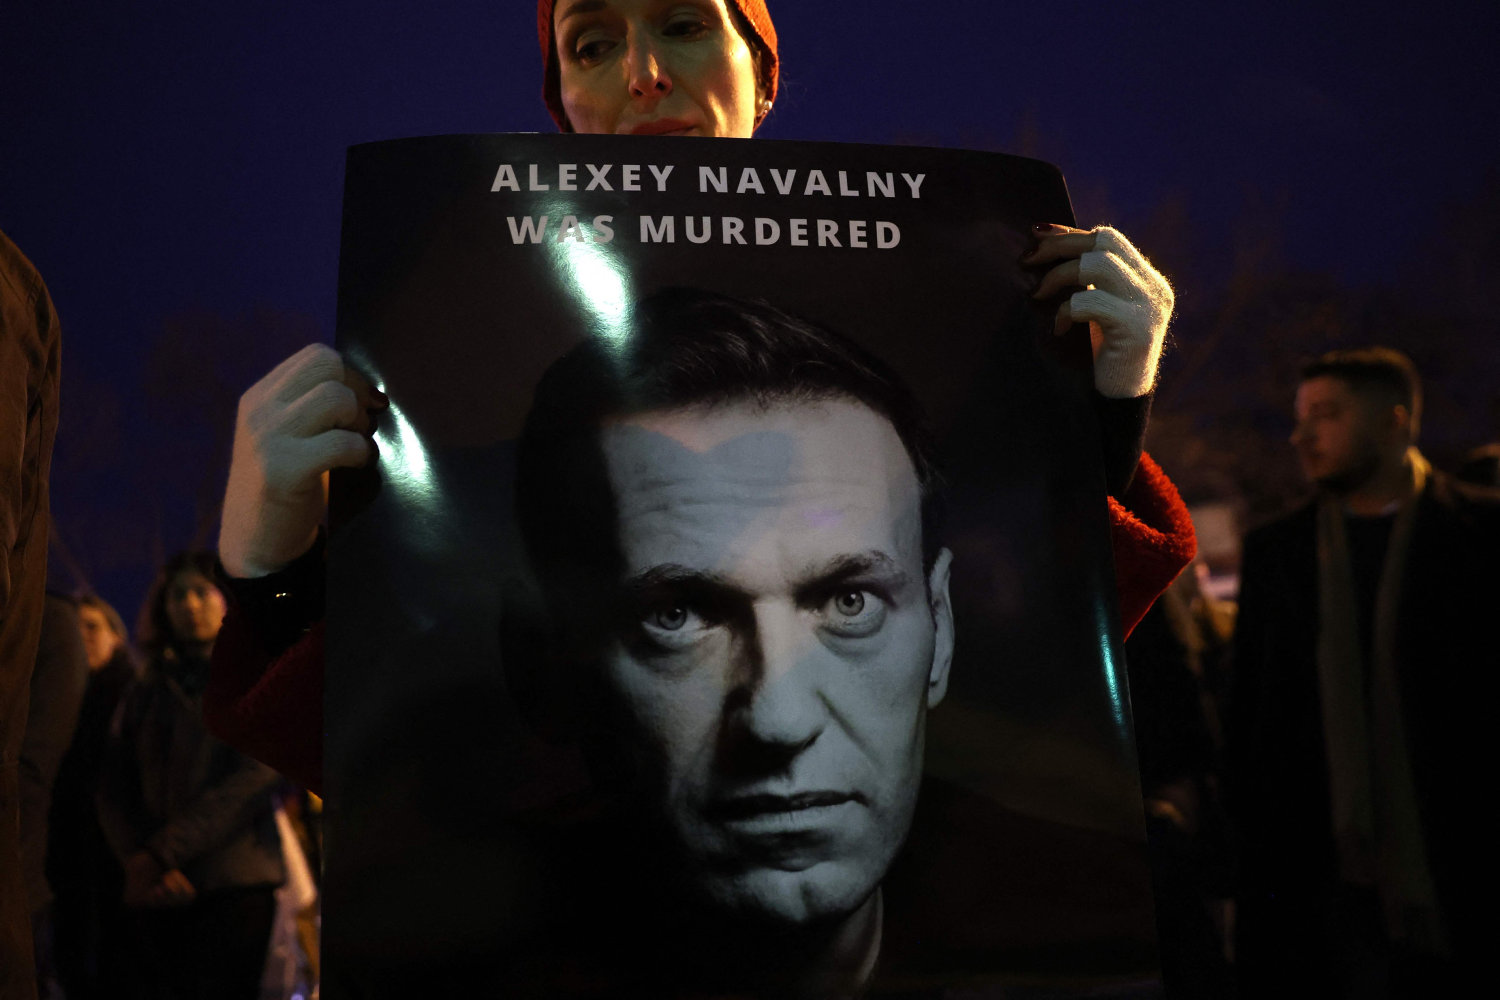 navalnyjs advokater er på vej til fængslet